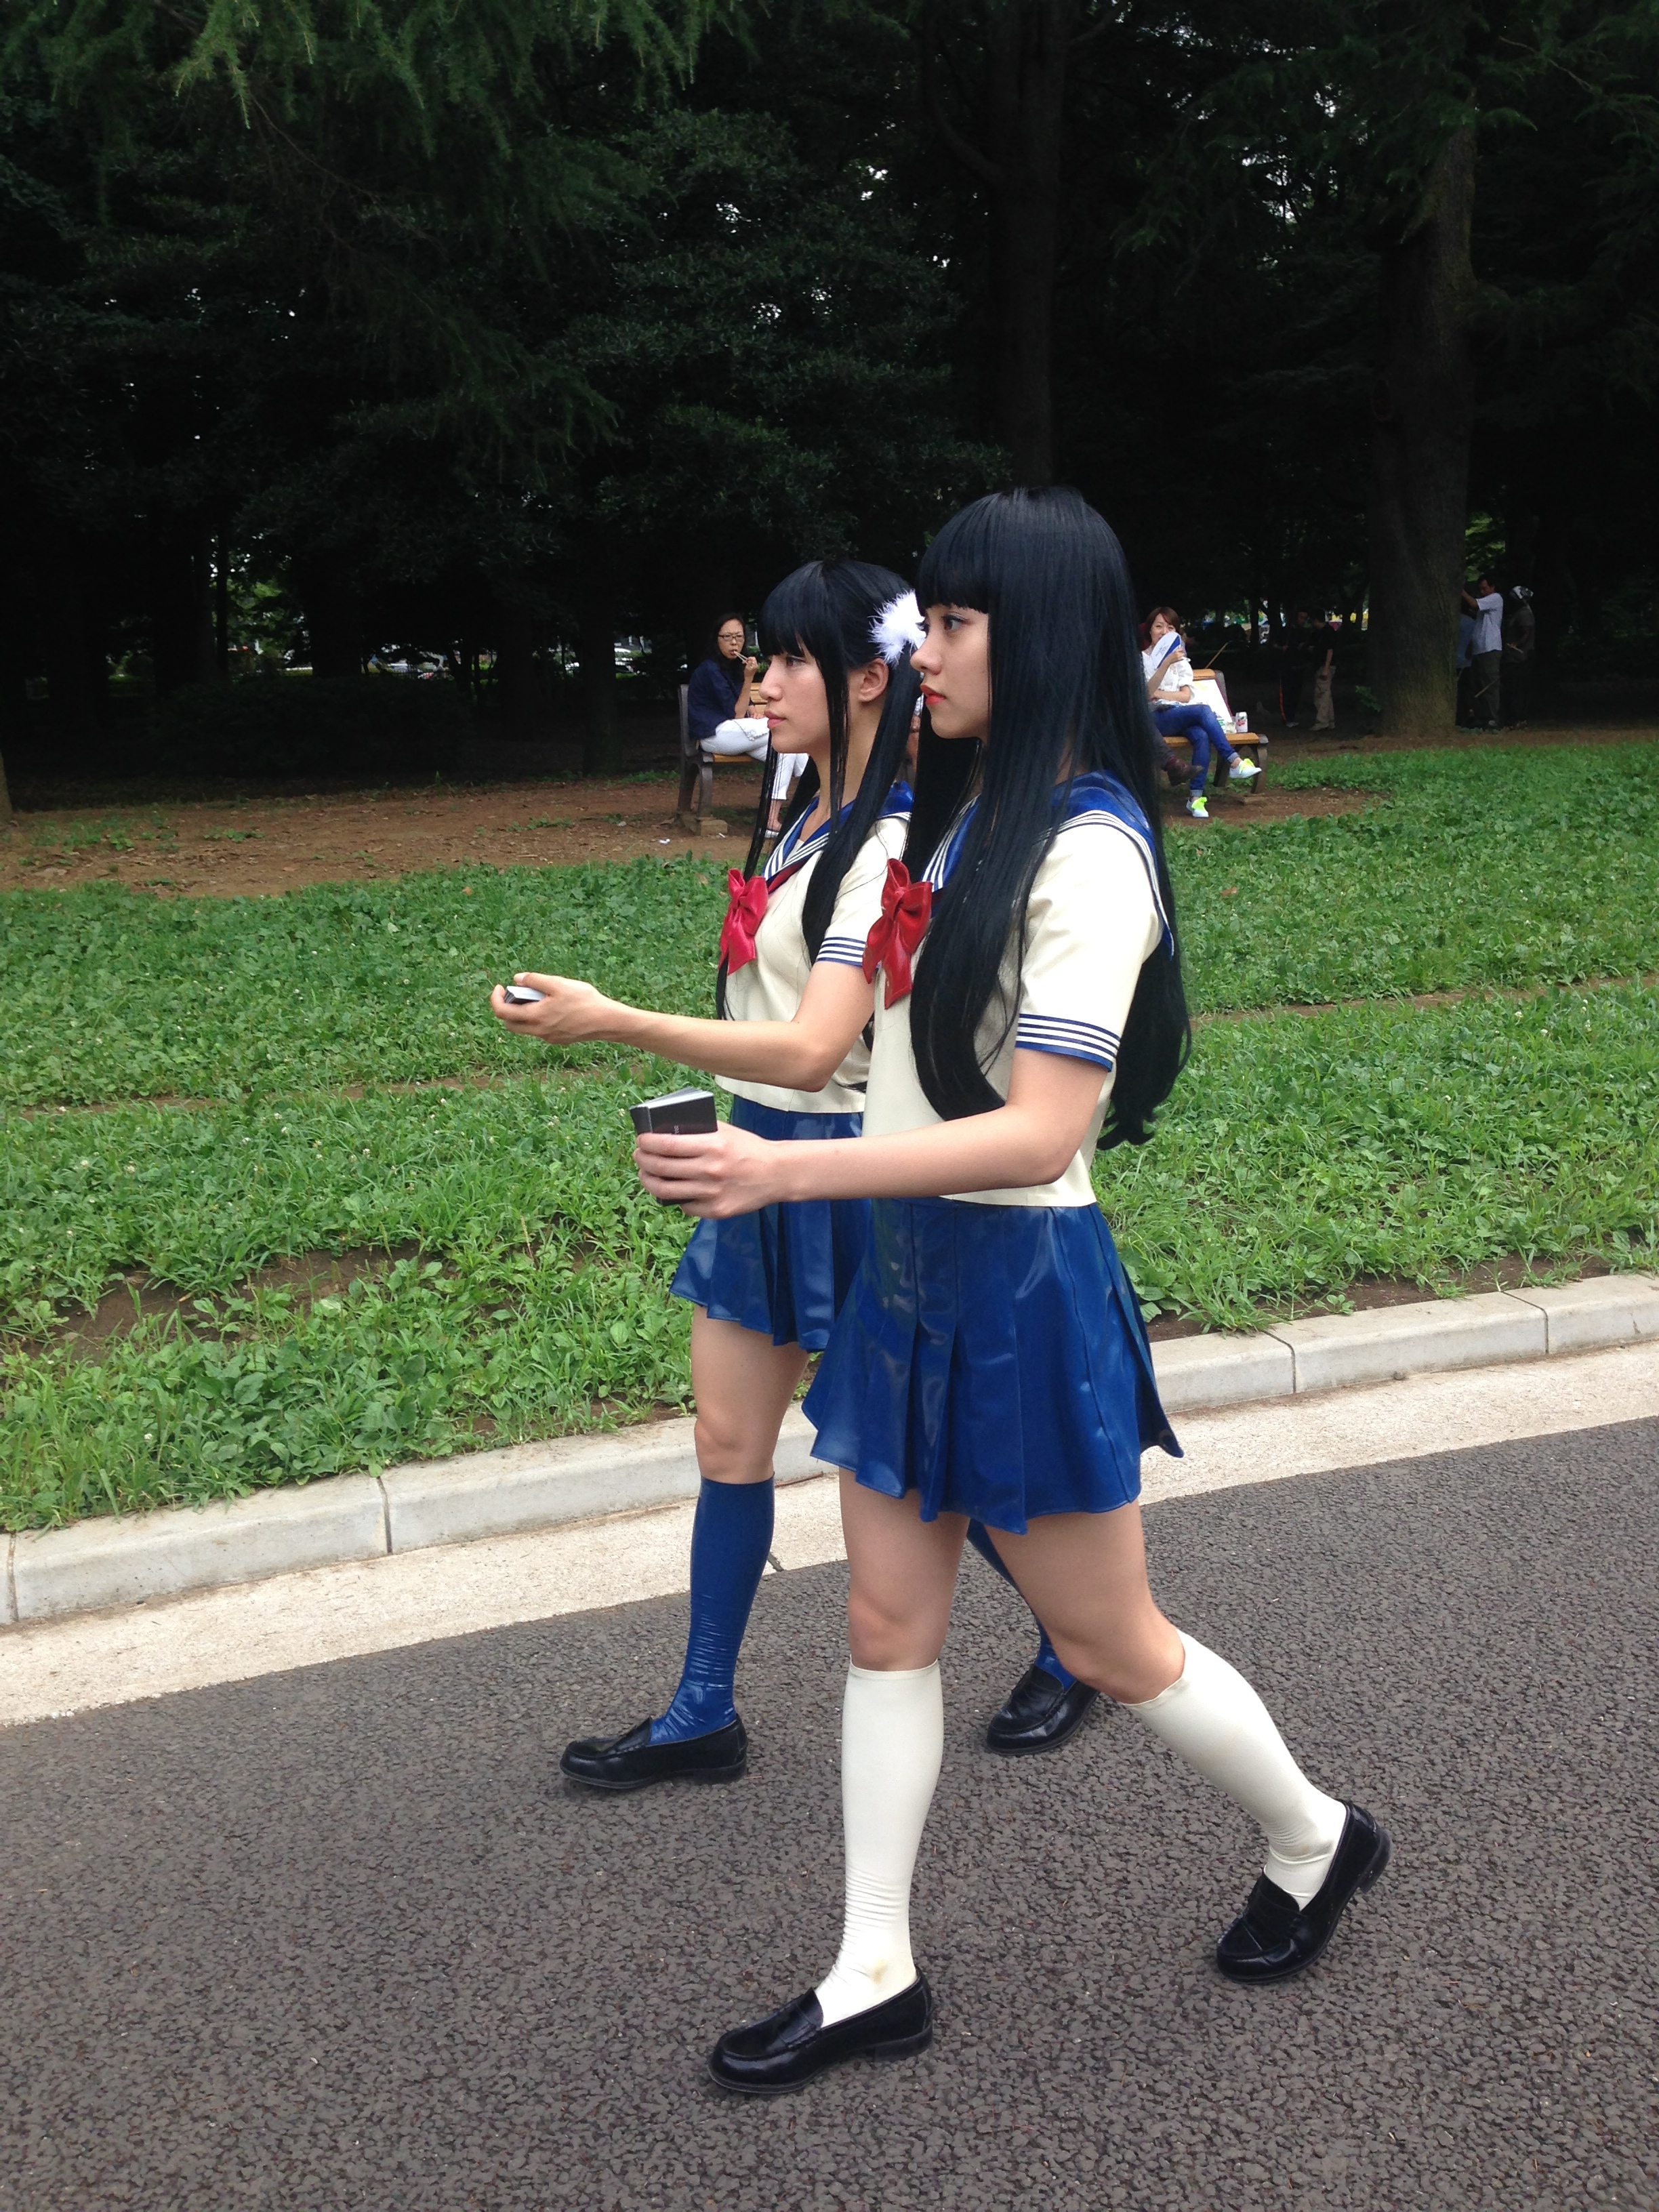 two women in school uniforms walking on a street